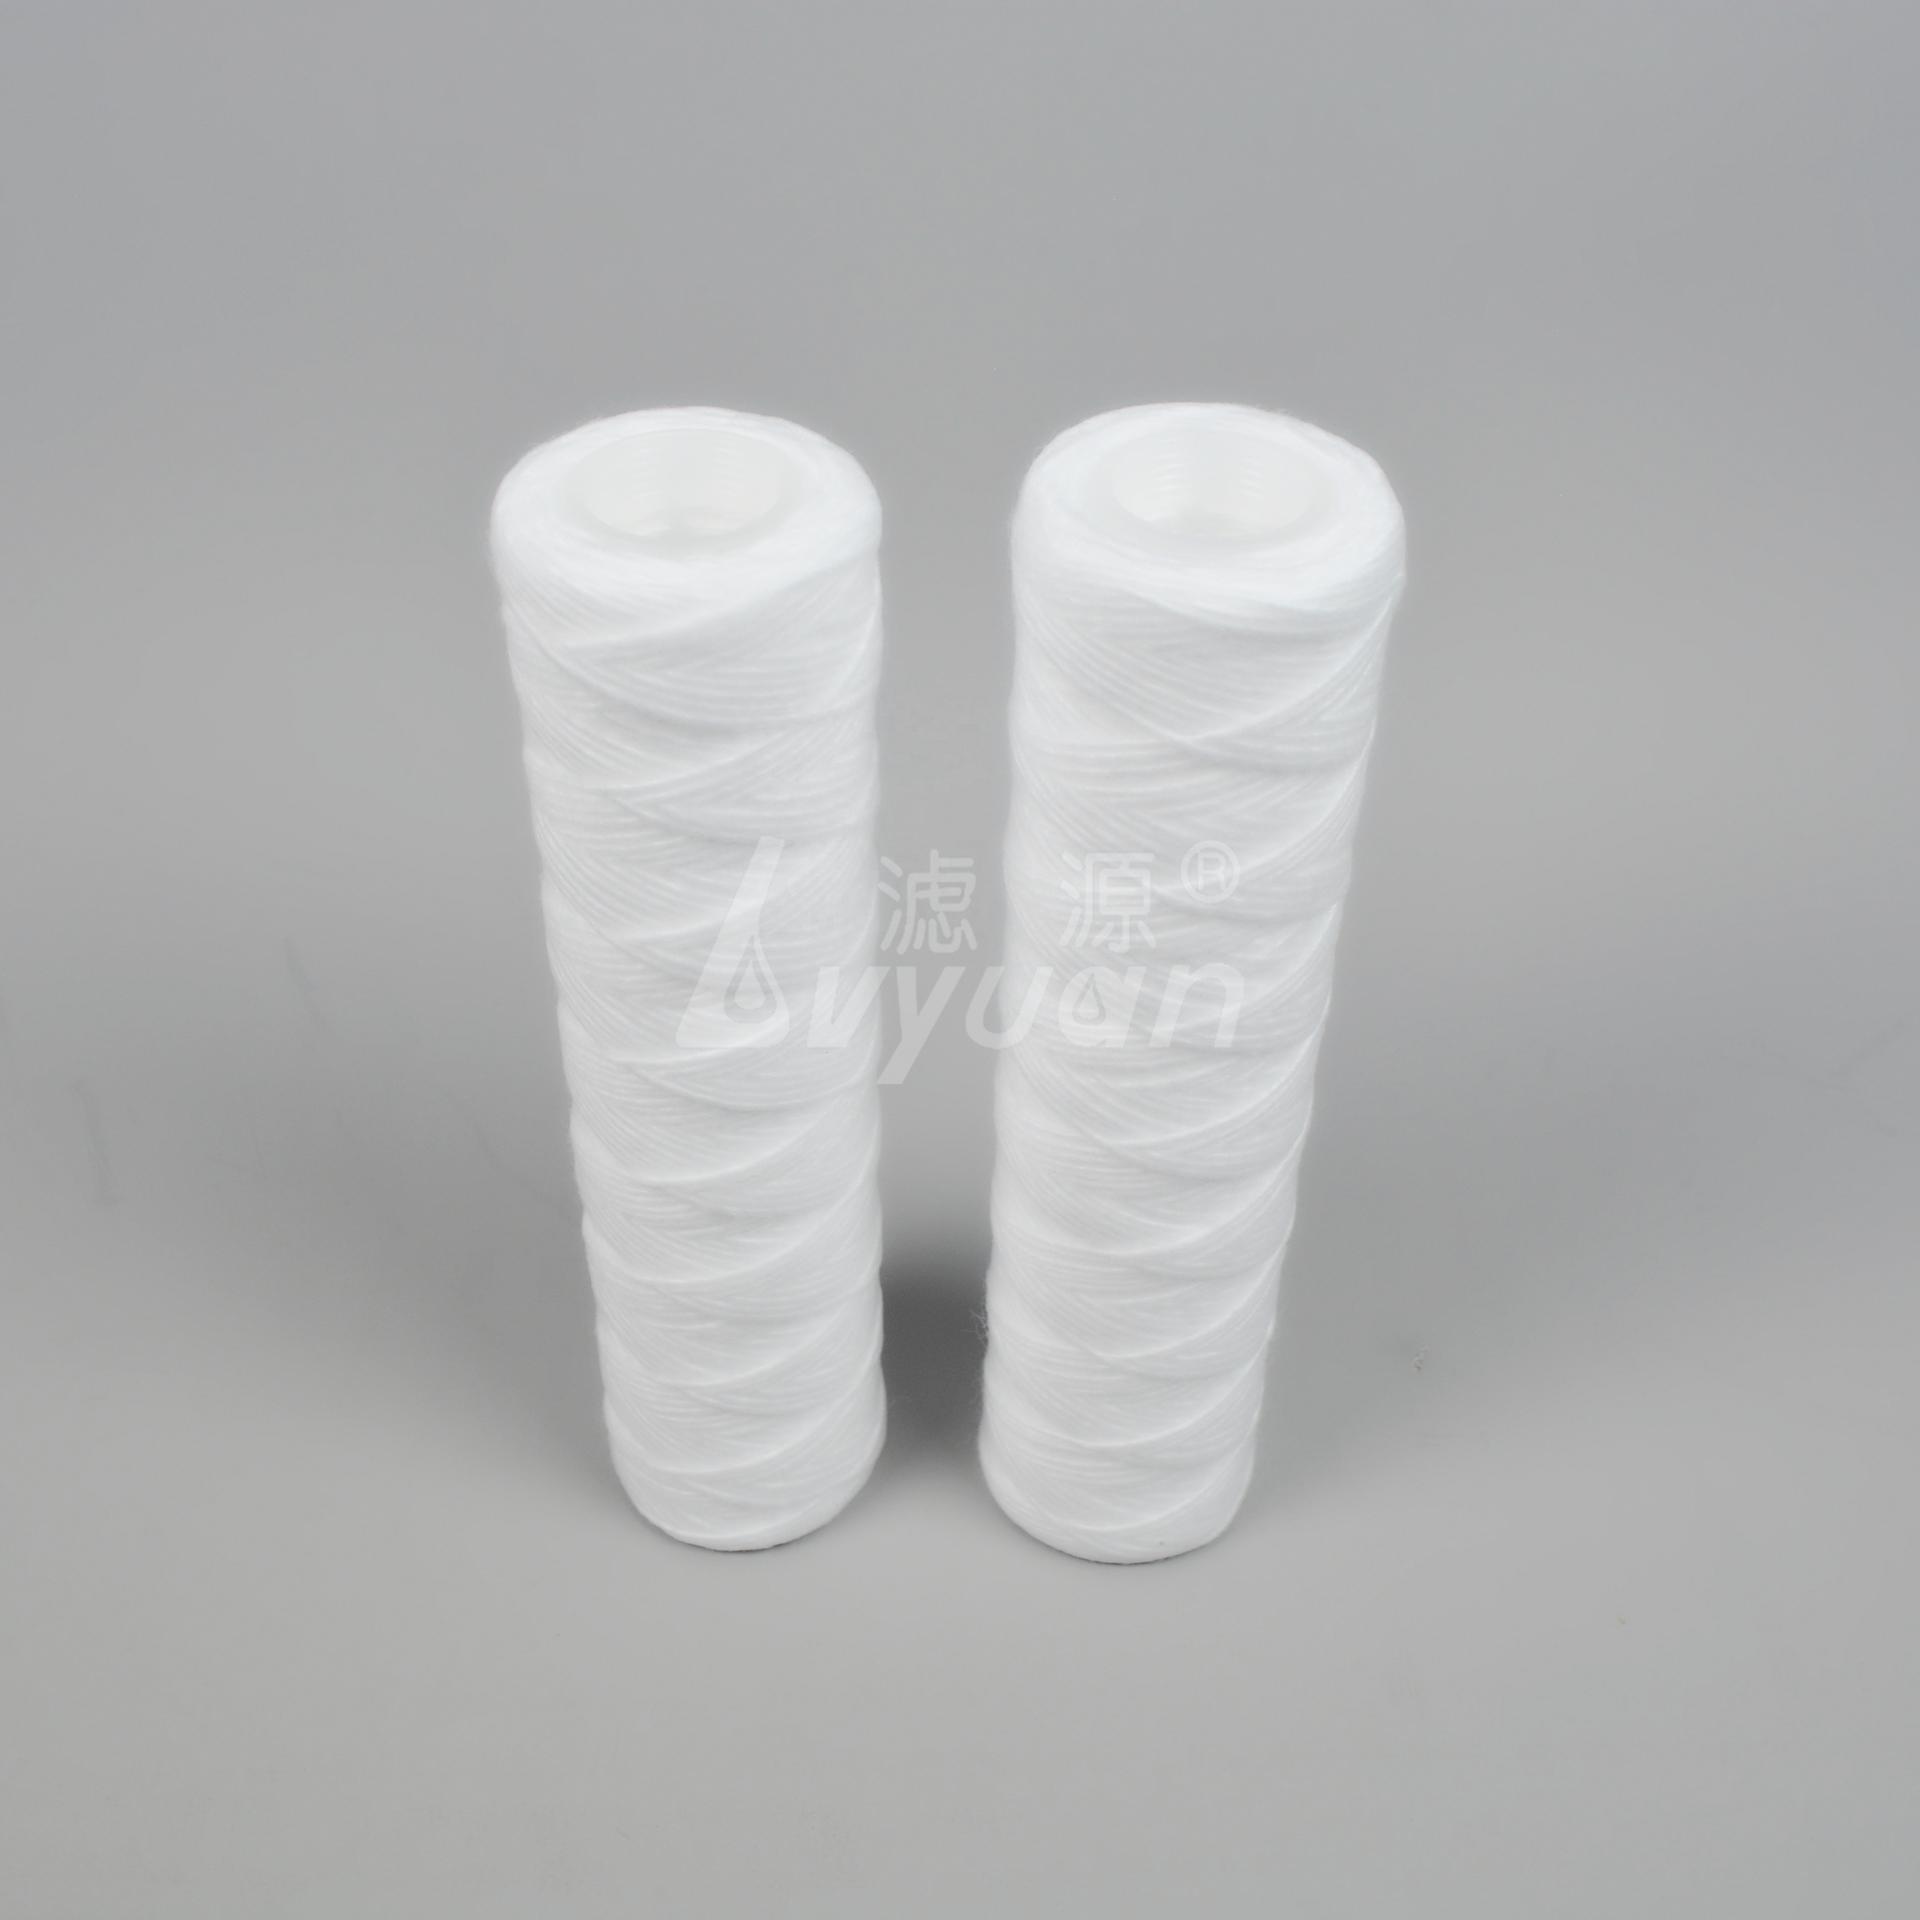 1 5 micron polypropylene filter cartridge/string wound filter cartridge/water cartridges for juice filtration